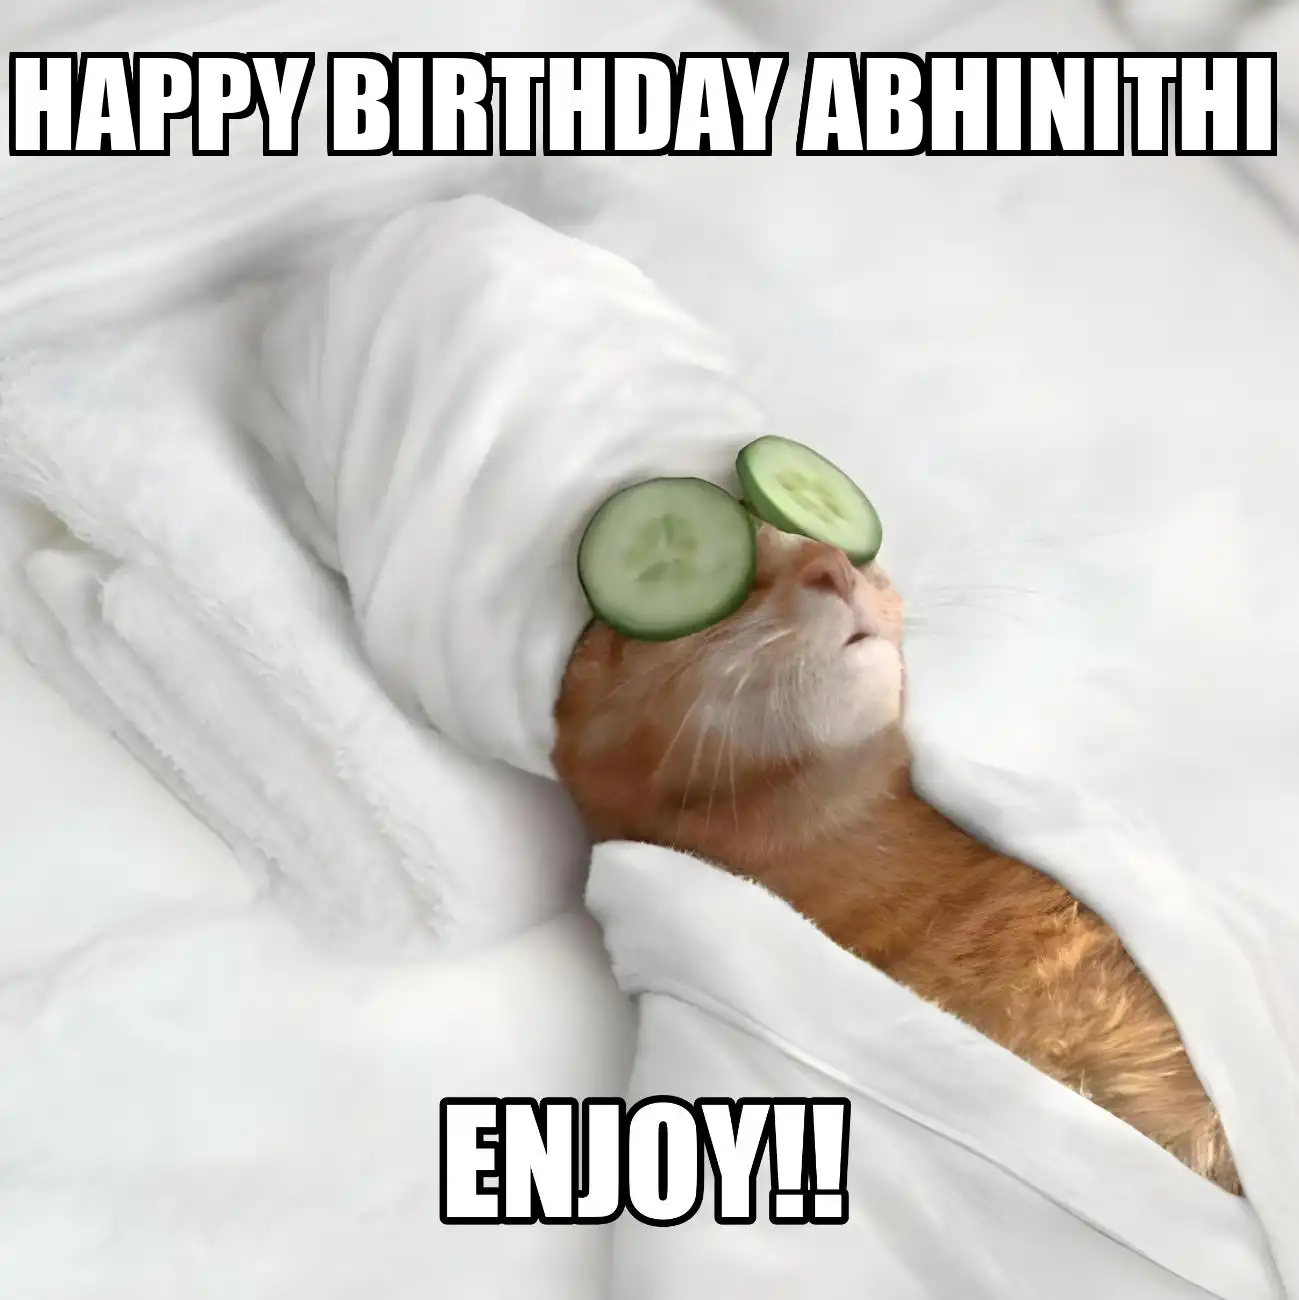 Happy Birthday Abhinithi Enjoy Cat Meme